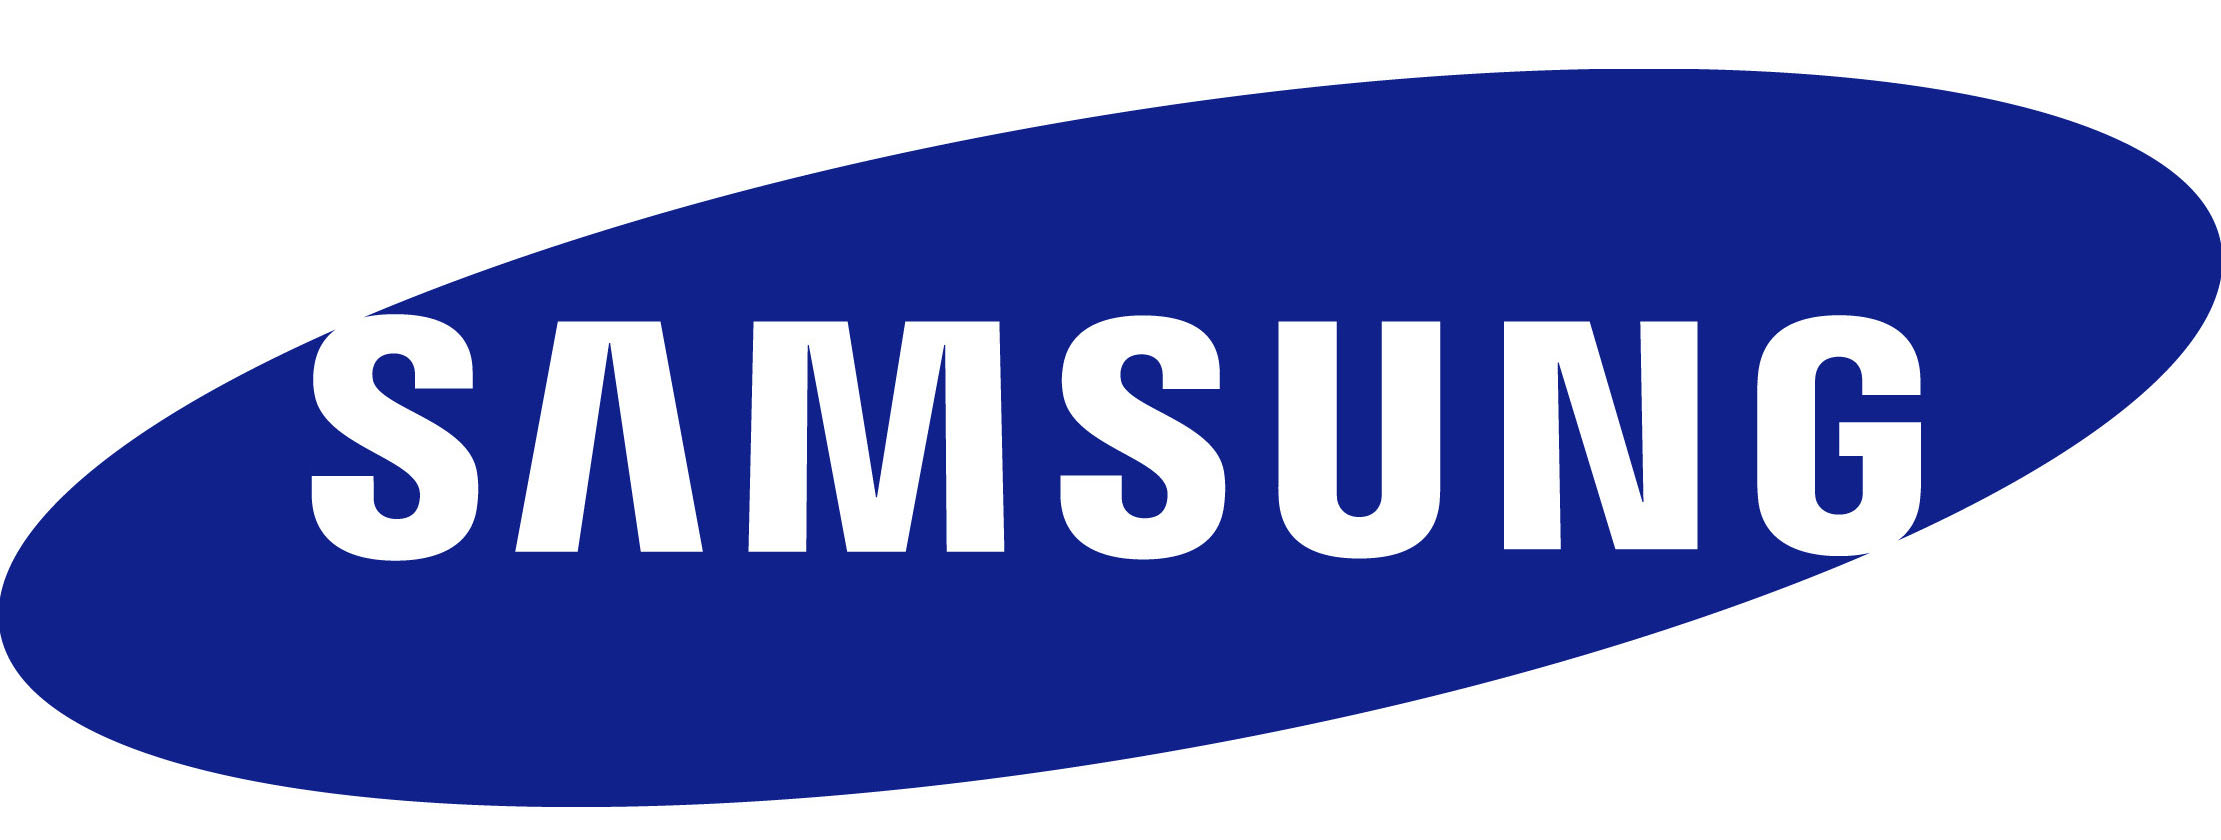 Как развивалась компания Samsung с момента основания и до наших дней - современная эмблема